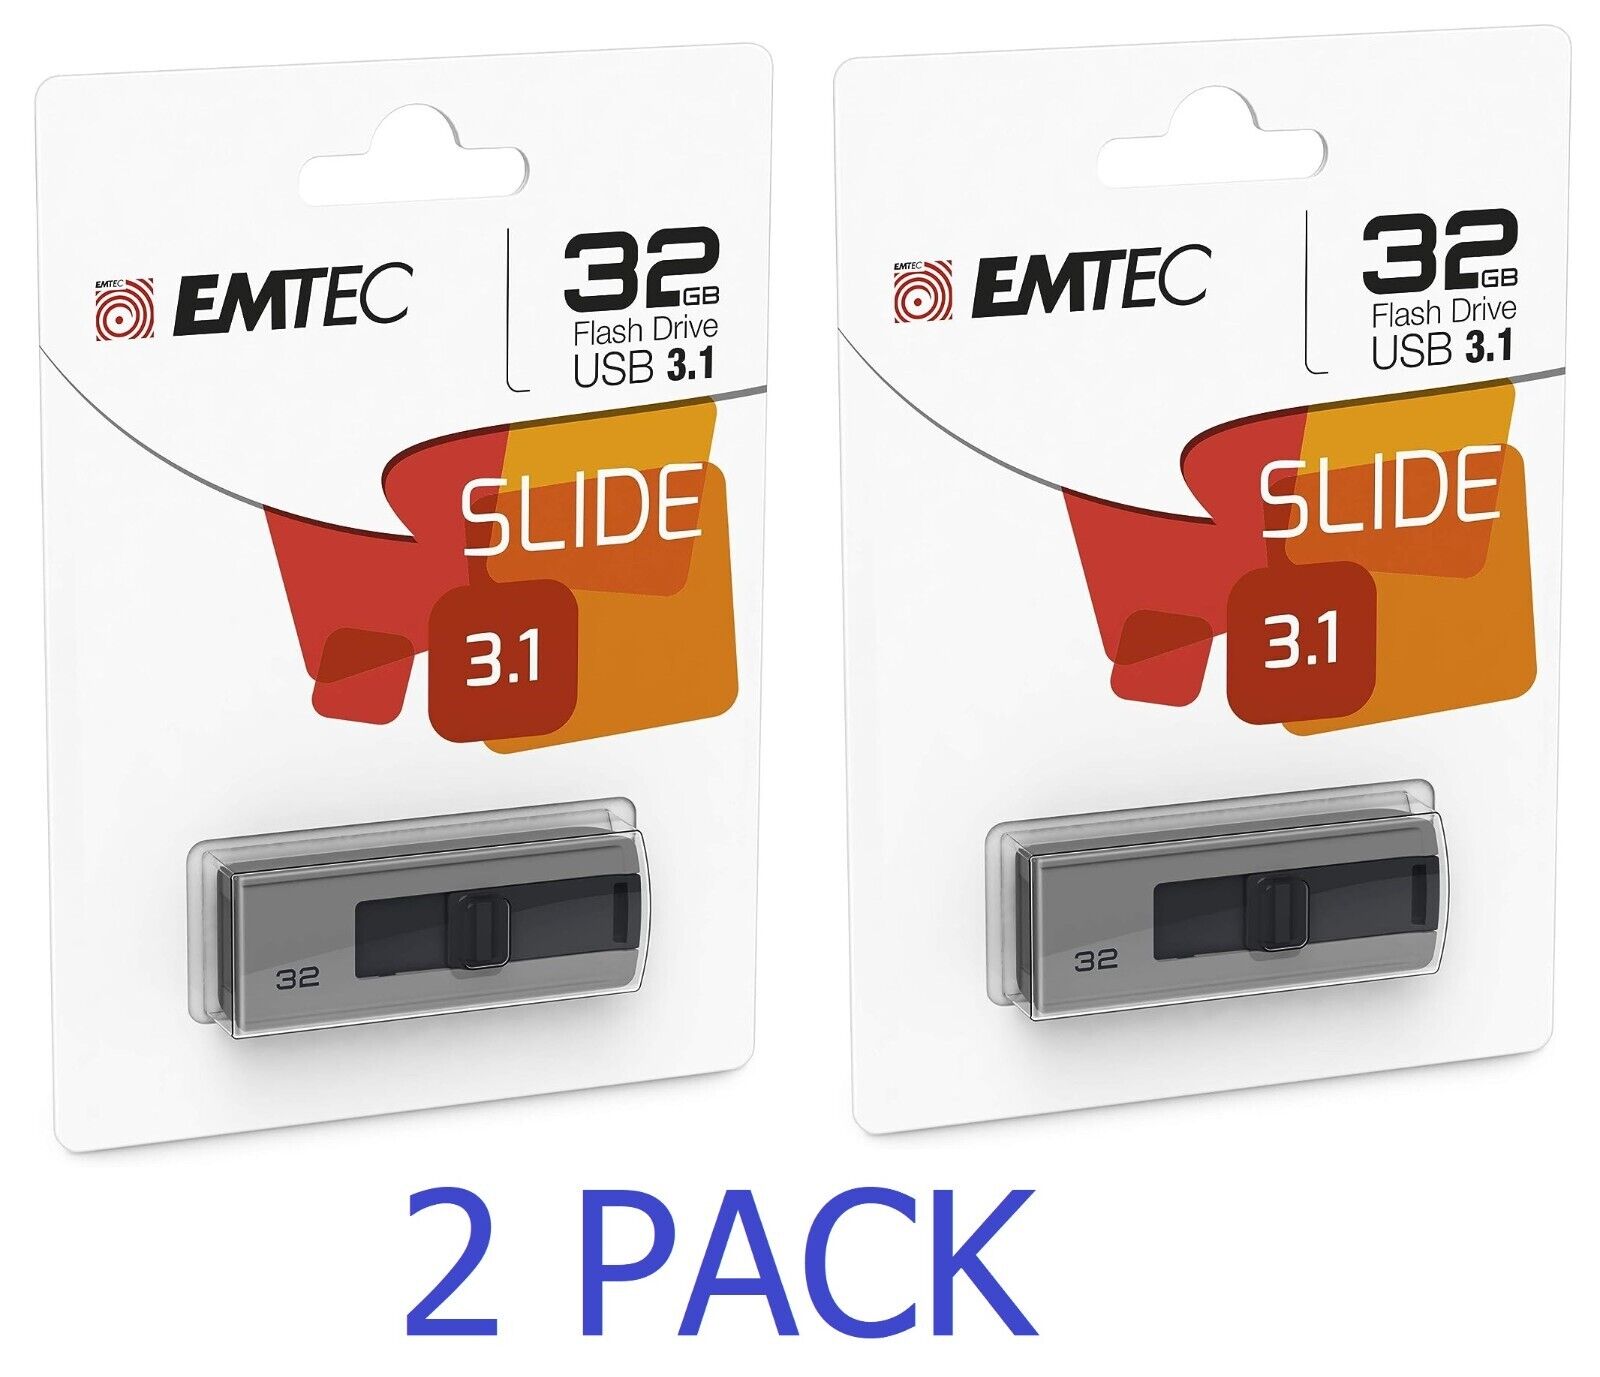 2 PACK Emtec 32GB Slide Flash Drive - USB 3.1 - Gray (ECMMD32GB253) - NEW™